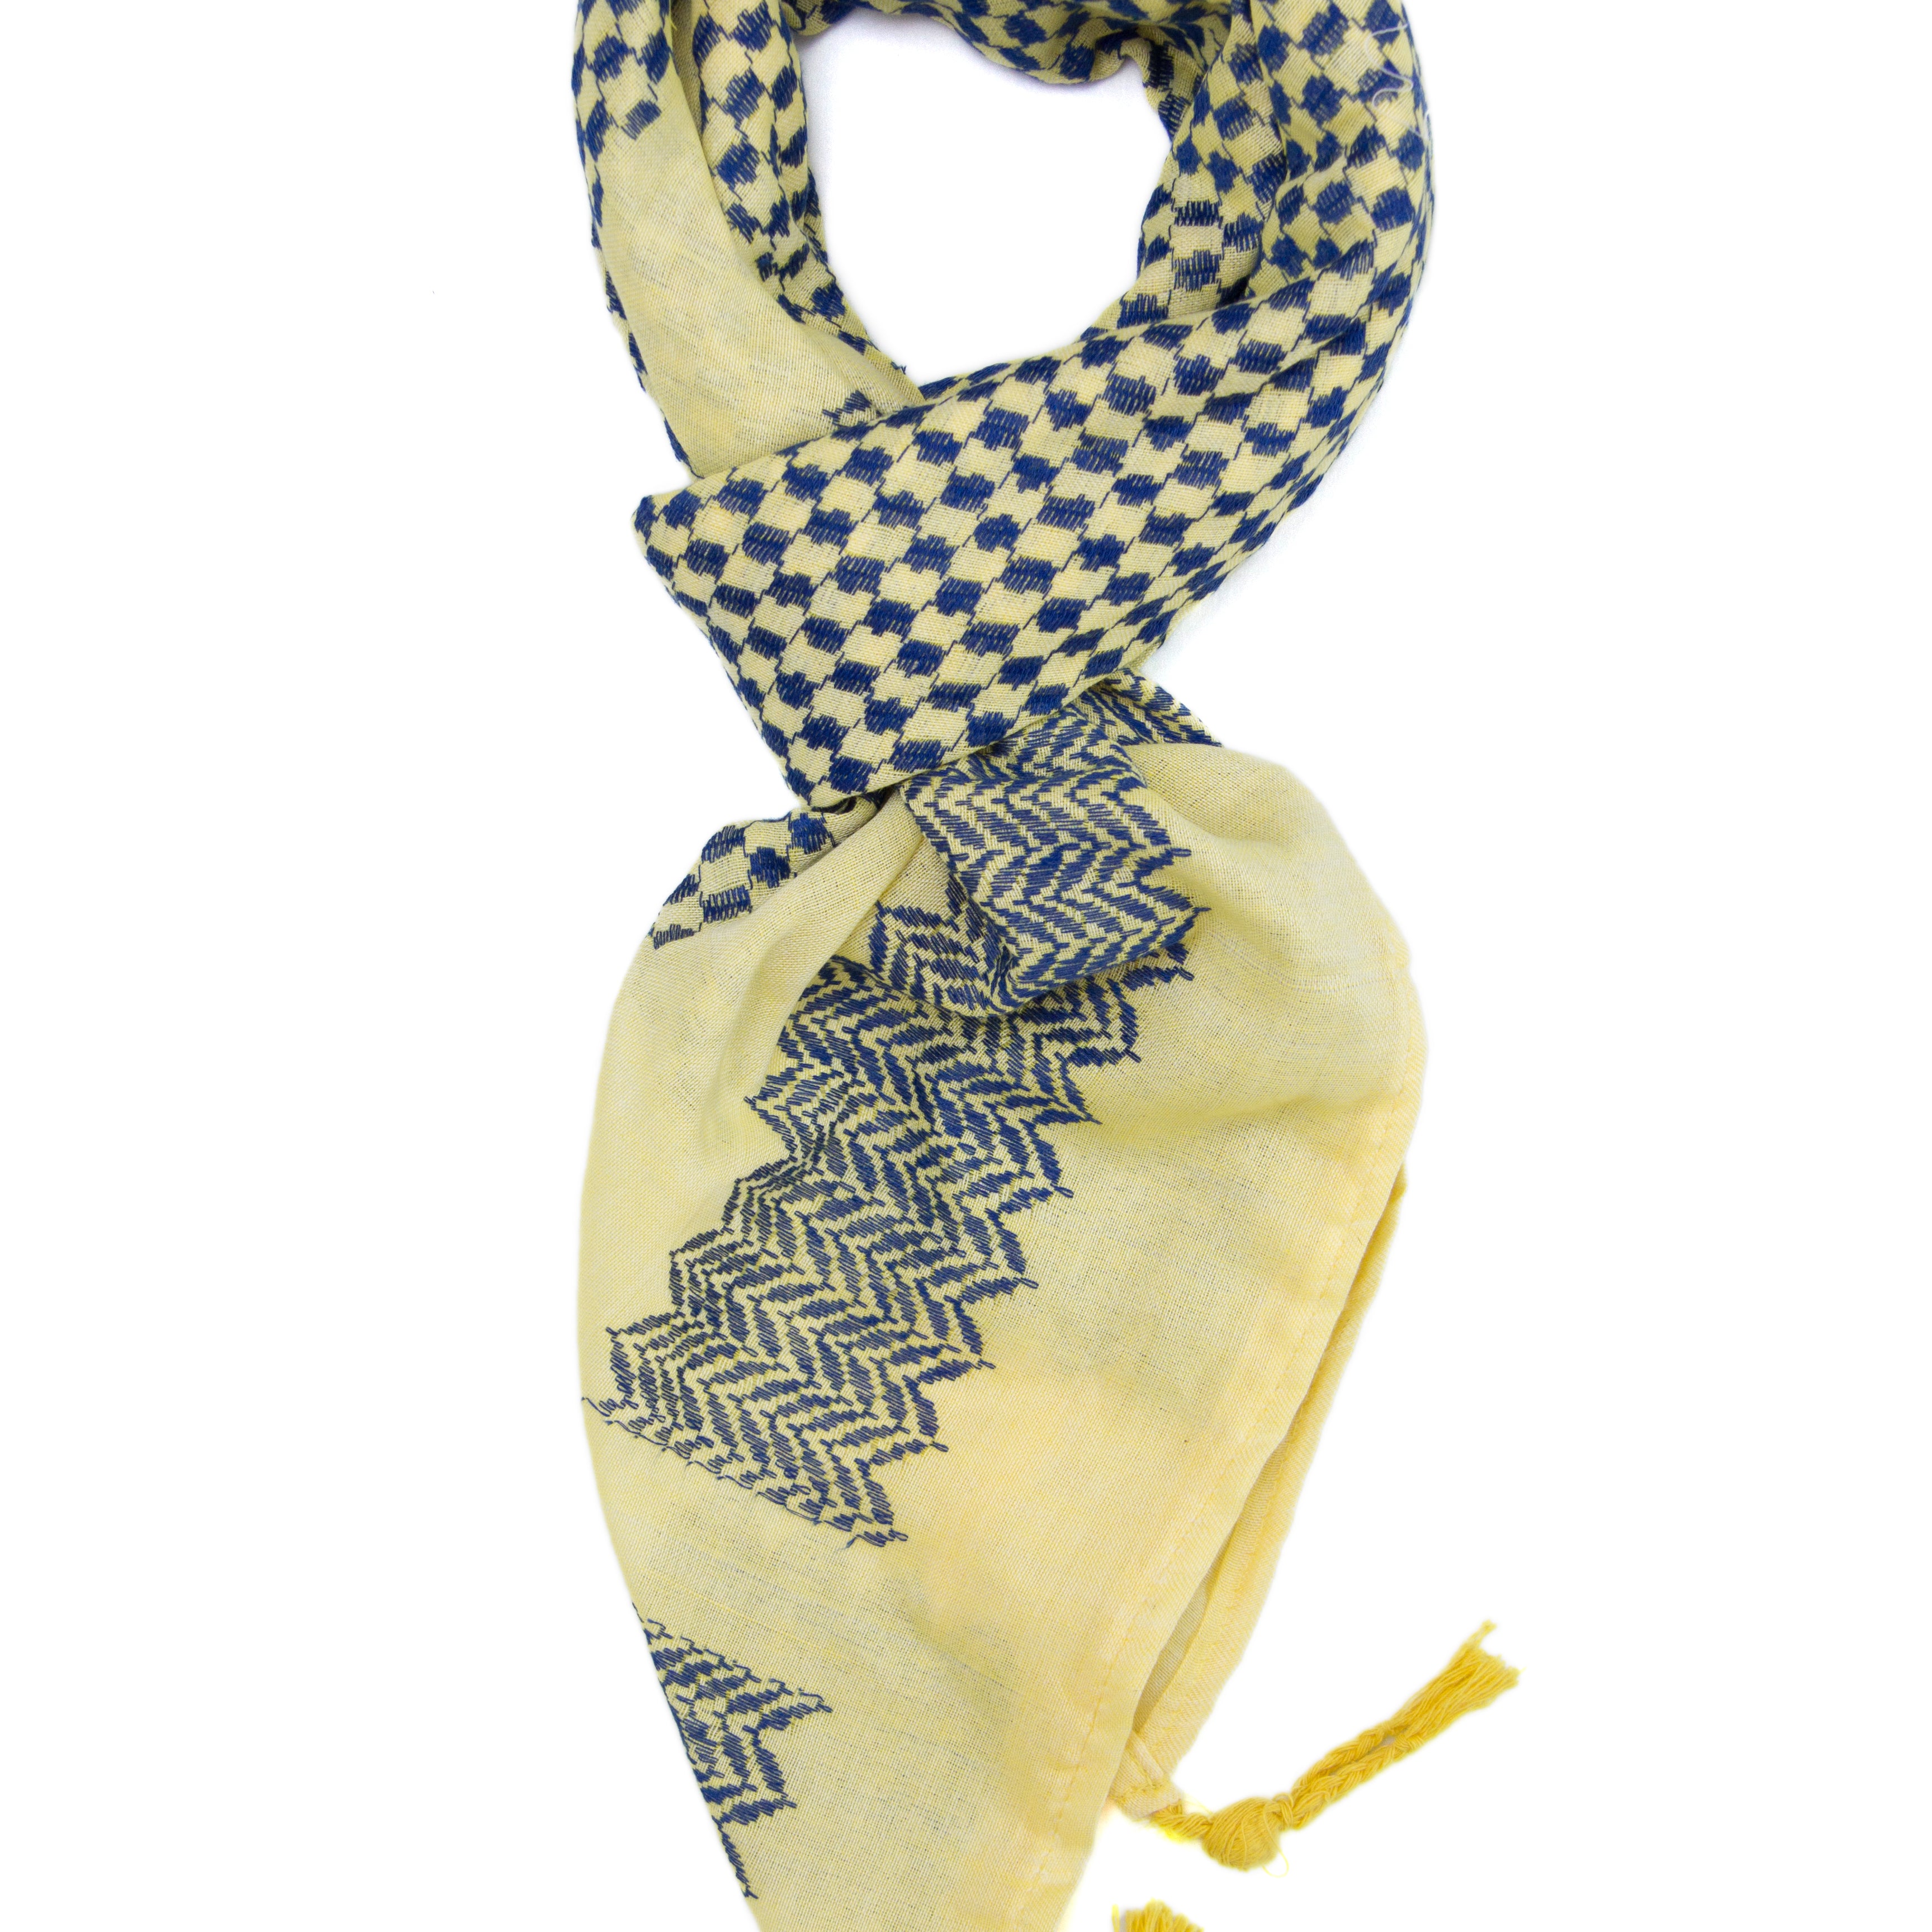 Hirbawi Original Mar Elias fashion scarf